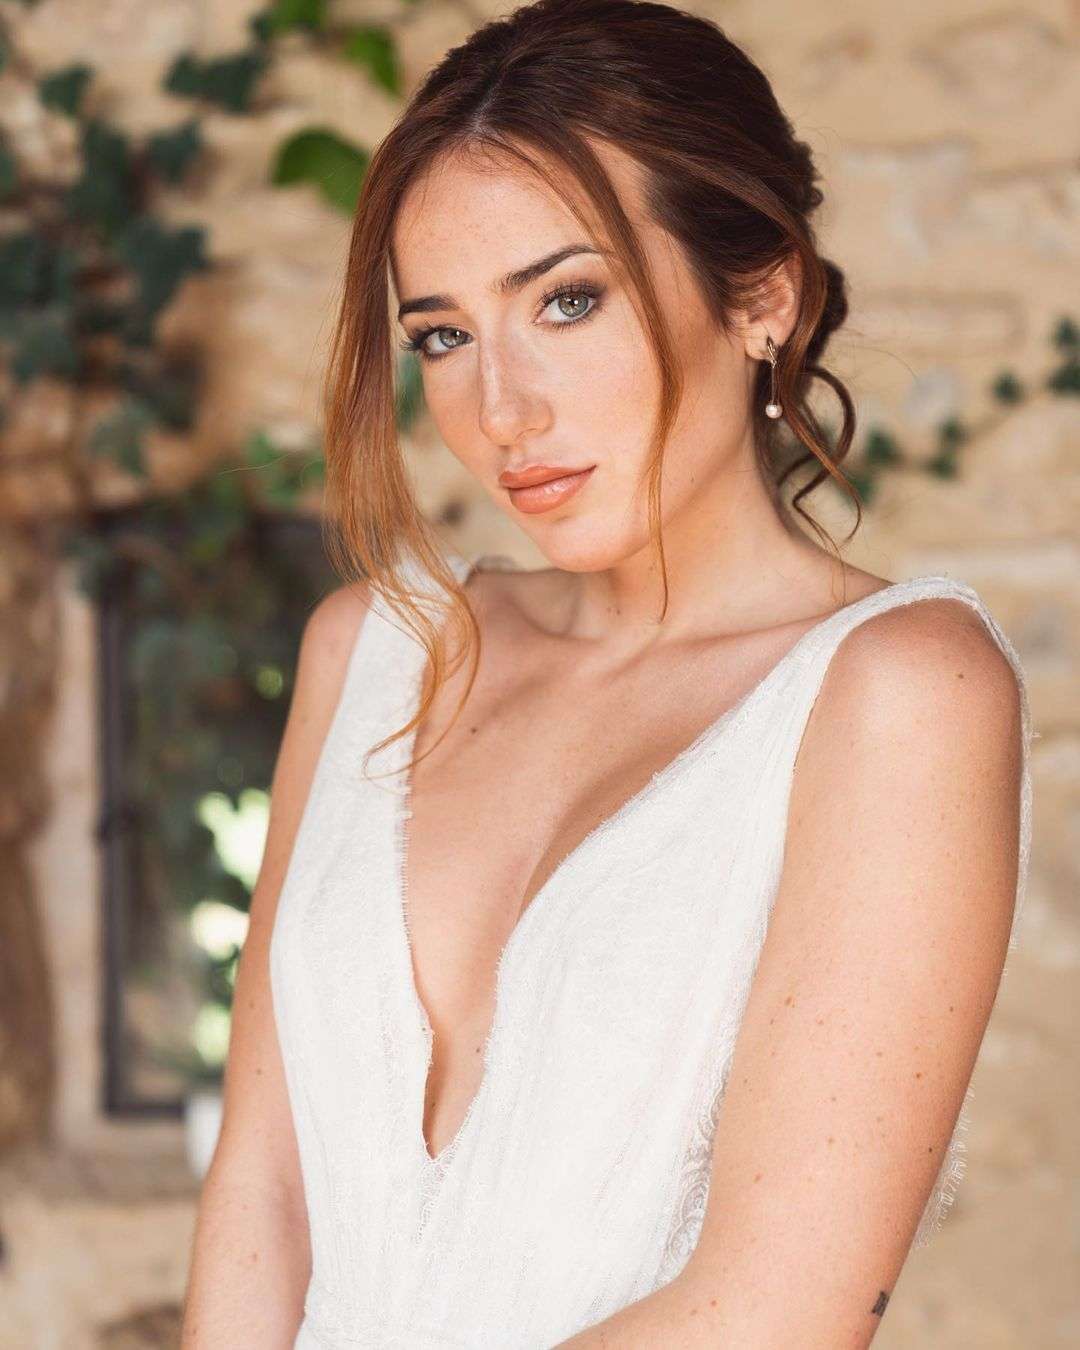 Morelia Beltramo - El Masnou - Maquillaje para bodas